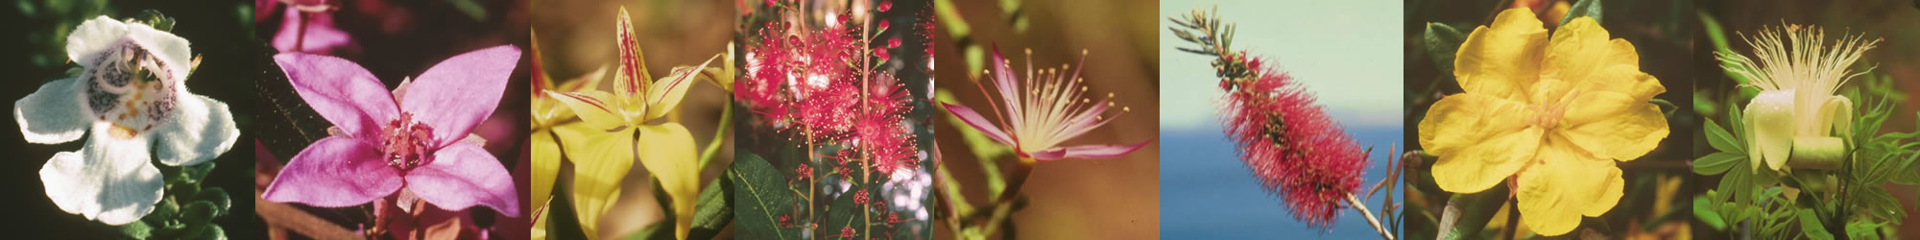 Australian Bush Flower Essences Images